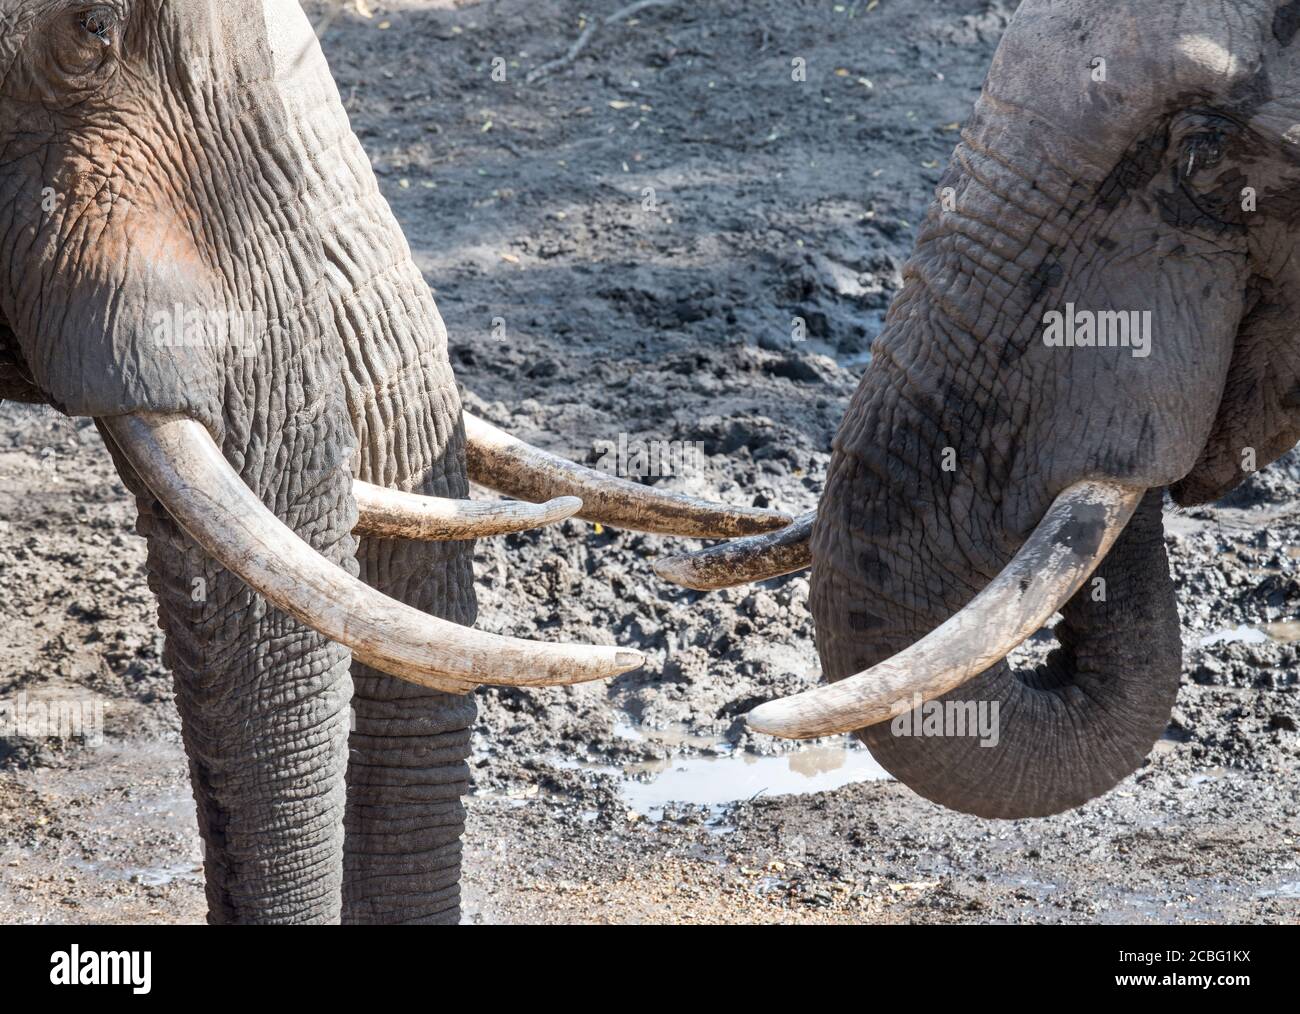 Tre grossi tori di elefante in piedi faccia a faccia con le zanne mostrarsi l'un l'altro e bere acqua da un piccolo foro nel terreno Foto Stock